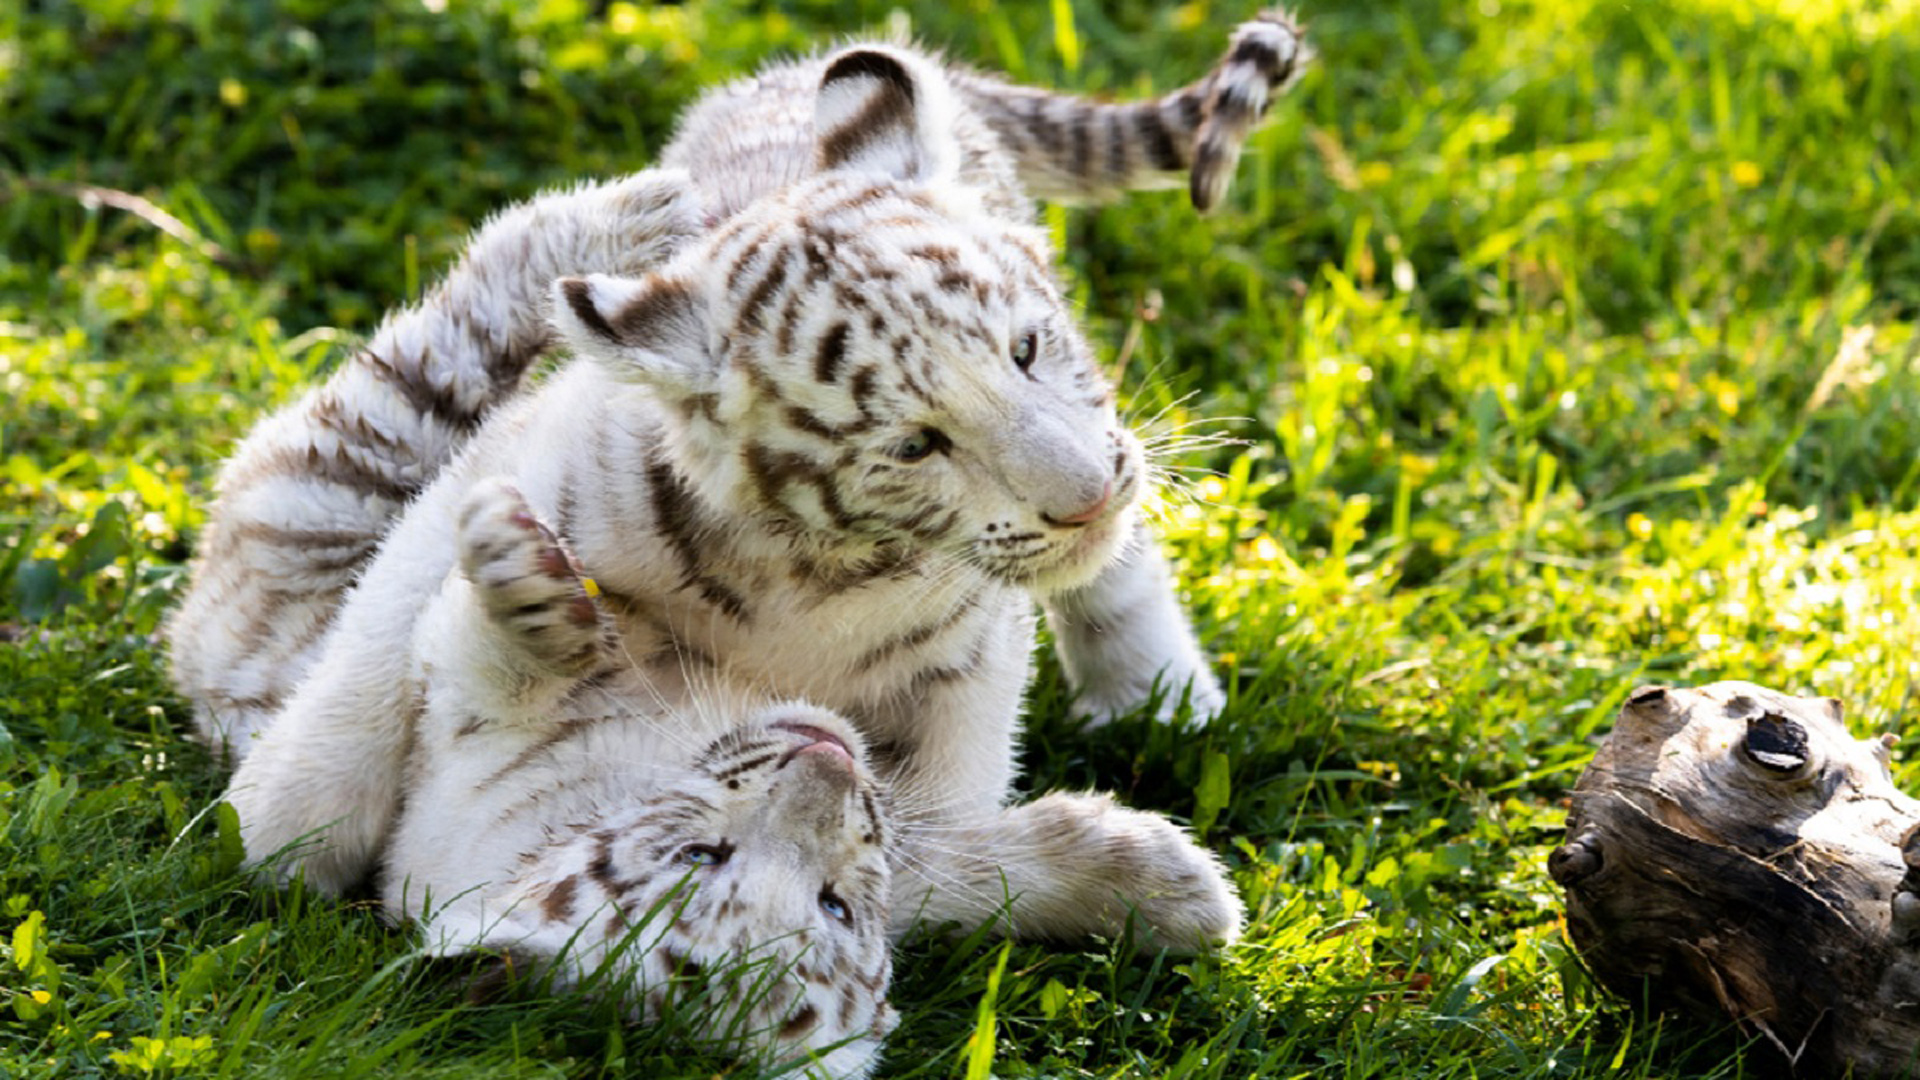 Nacen dos crías de tigre blanco en el parque Sendaviva en Navarra